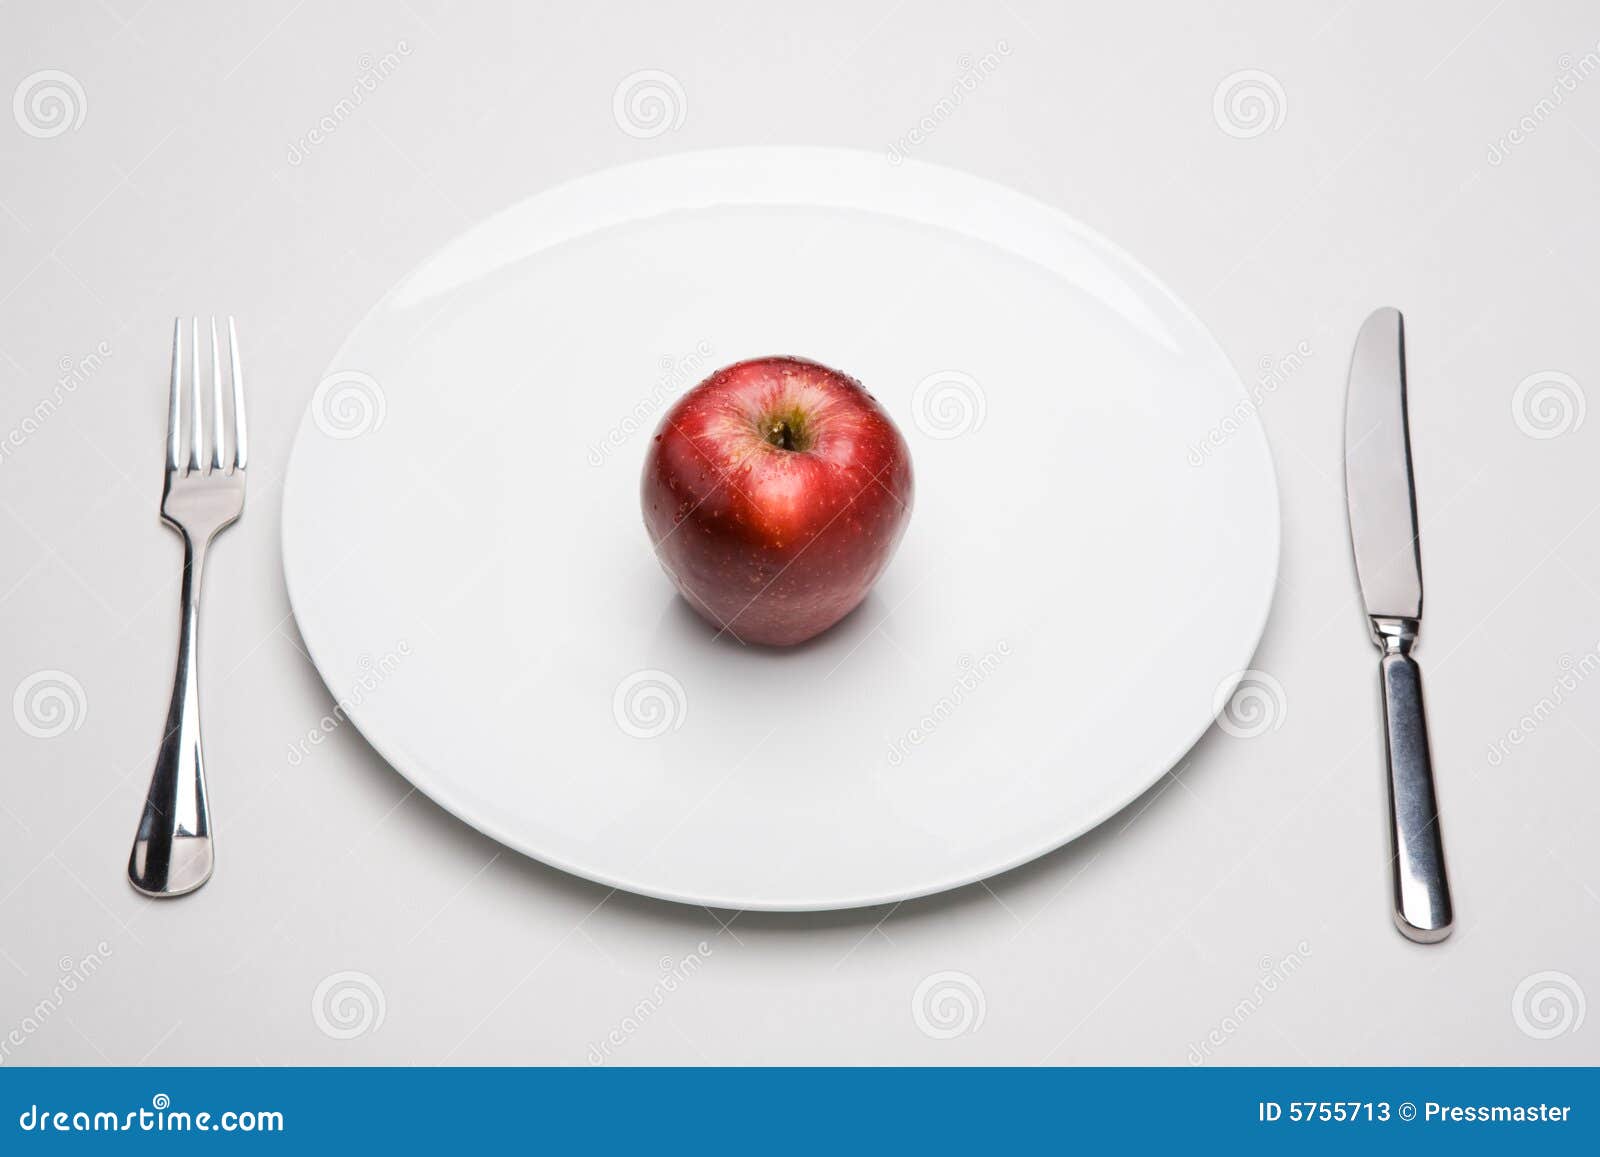 На тарелке лежат красные. Яблоко на тарелке. Красные яблоки на тарелке. Яблоко на белой тарелке. Тарелка с одним яблоком.